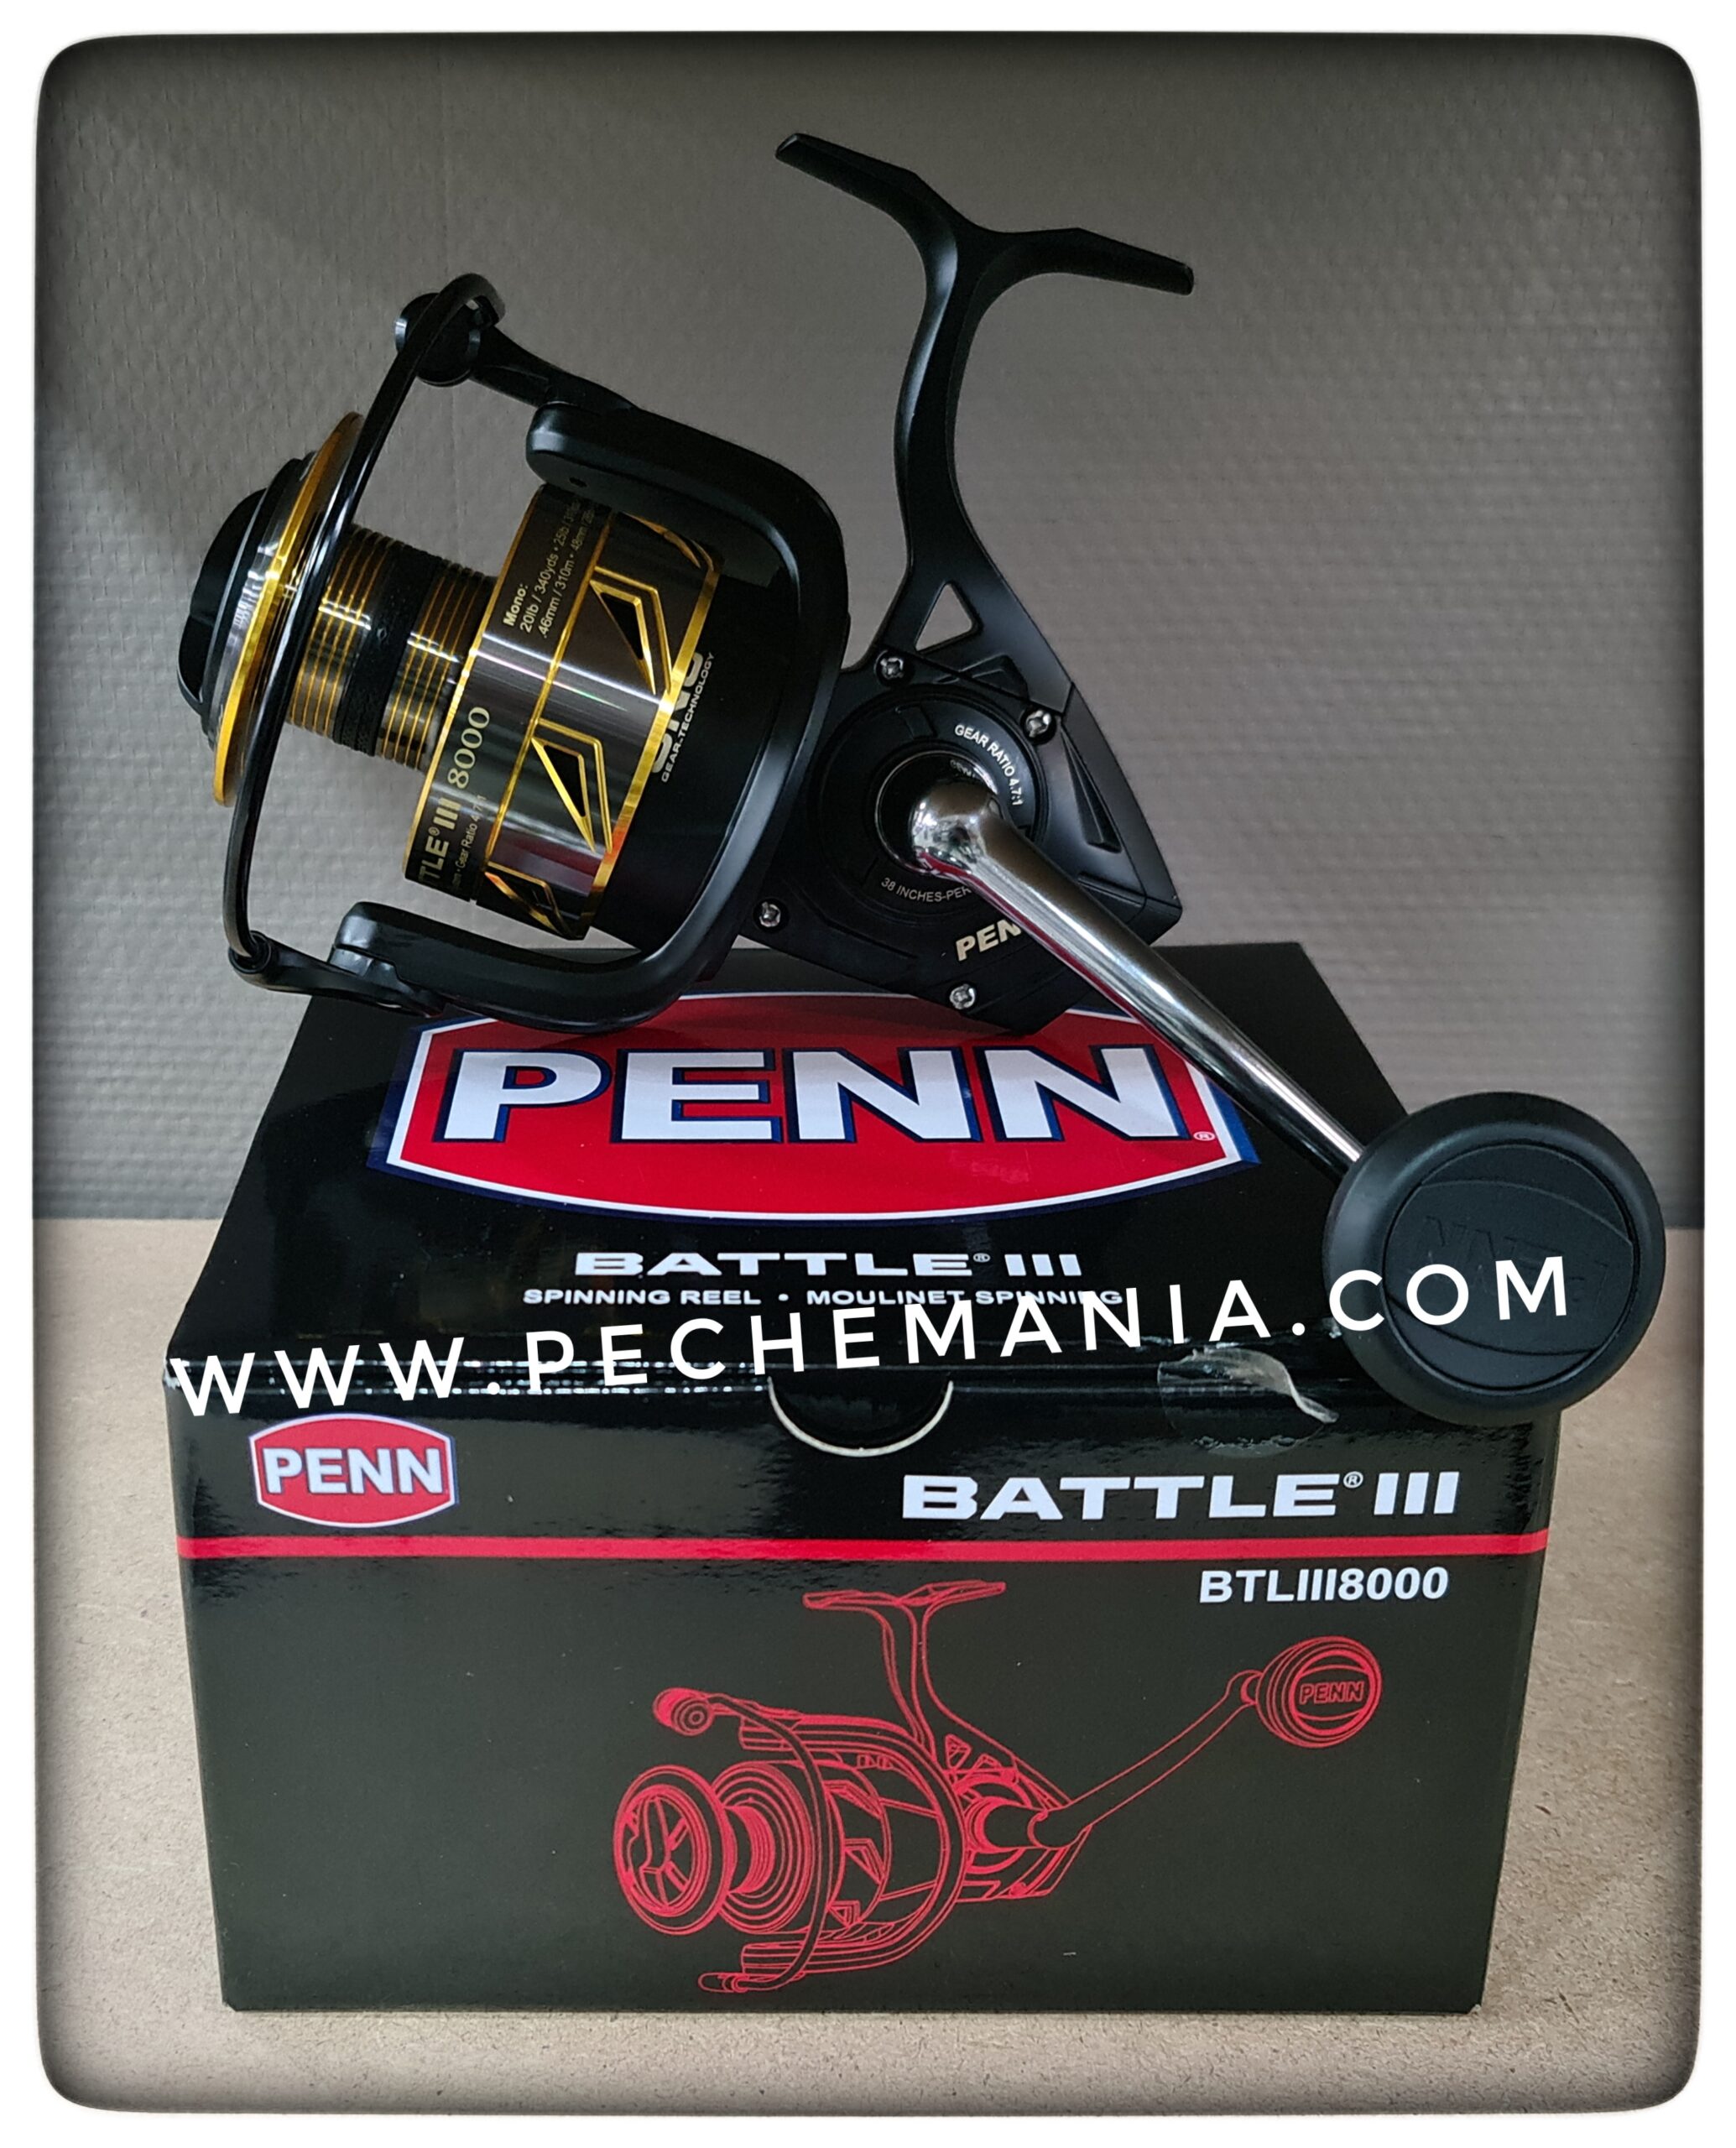 Penn Battle III Spinning 8000 - Pechemania